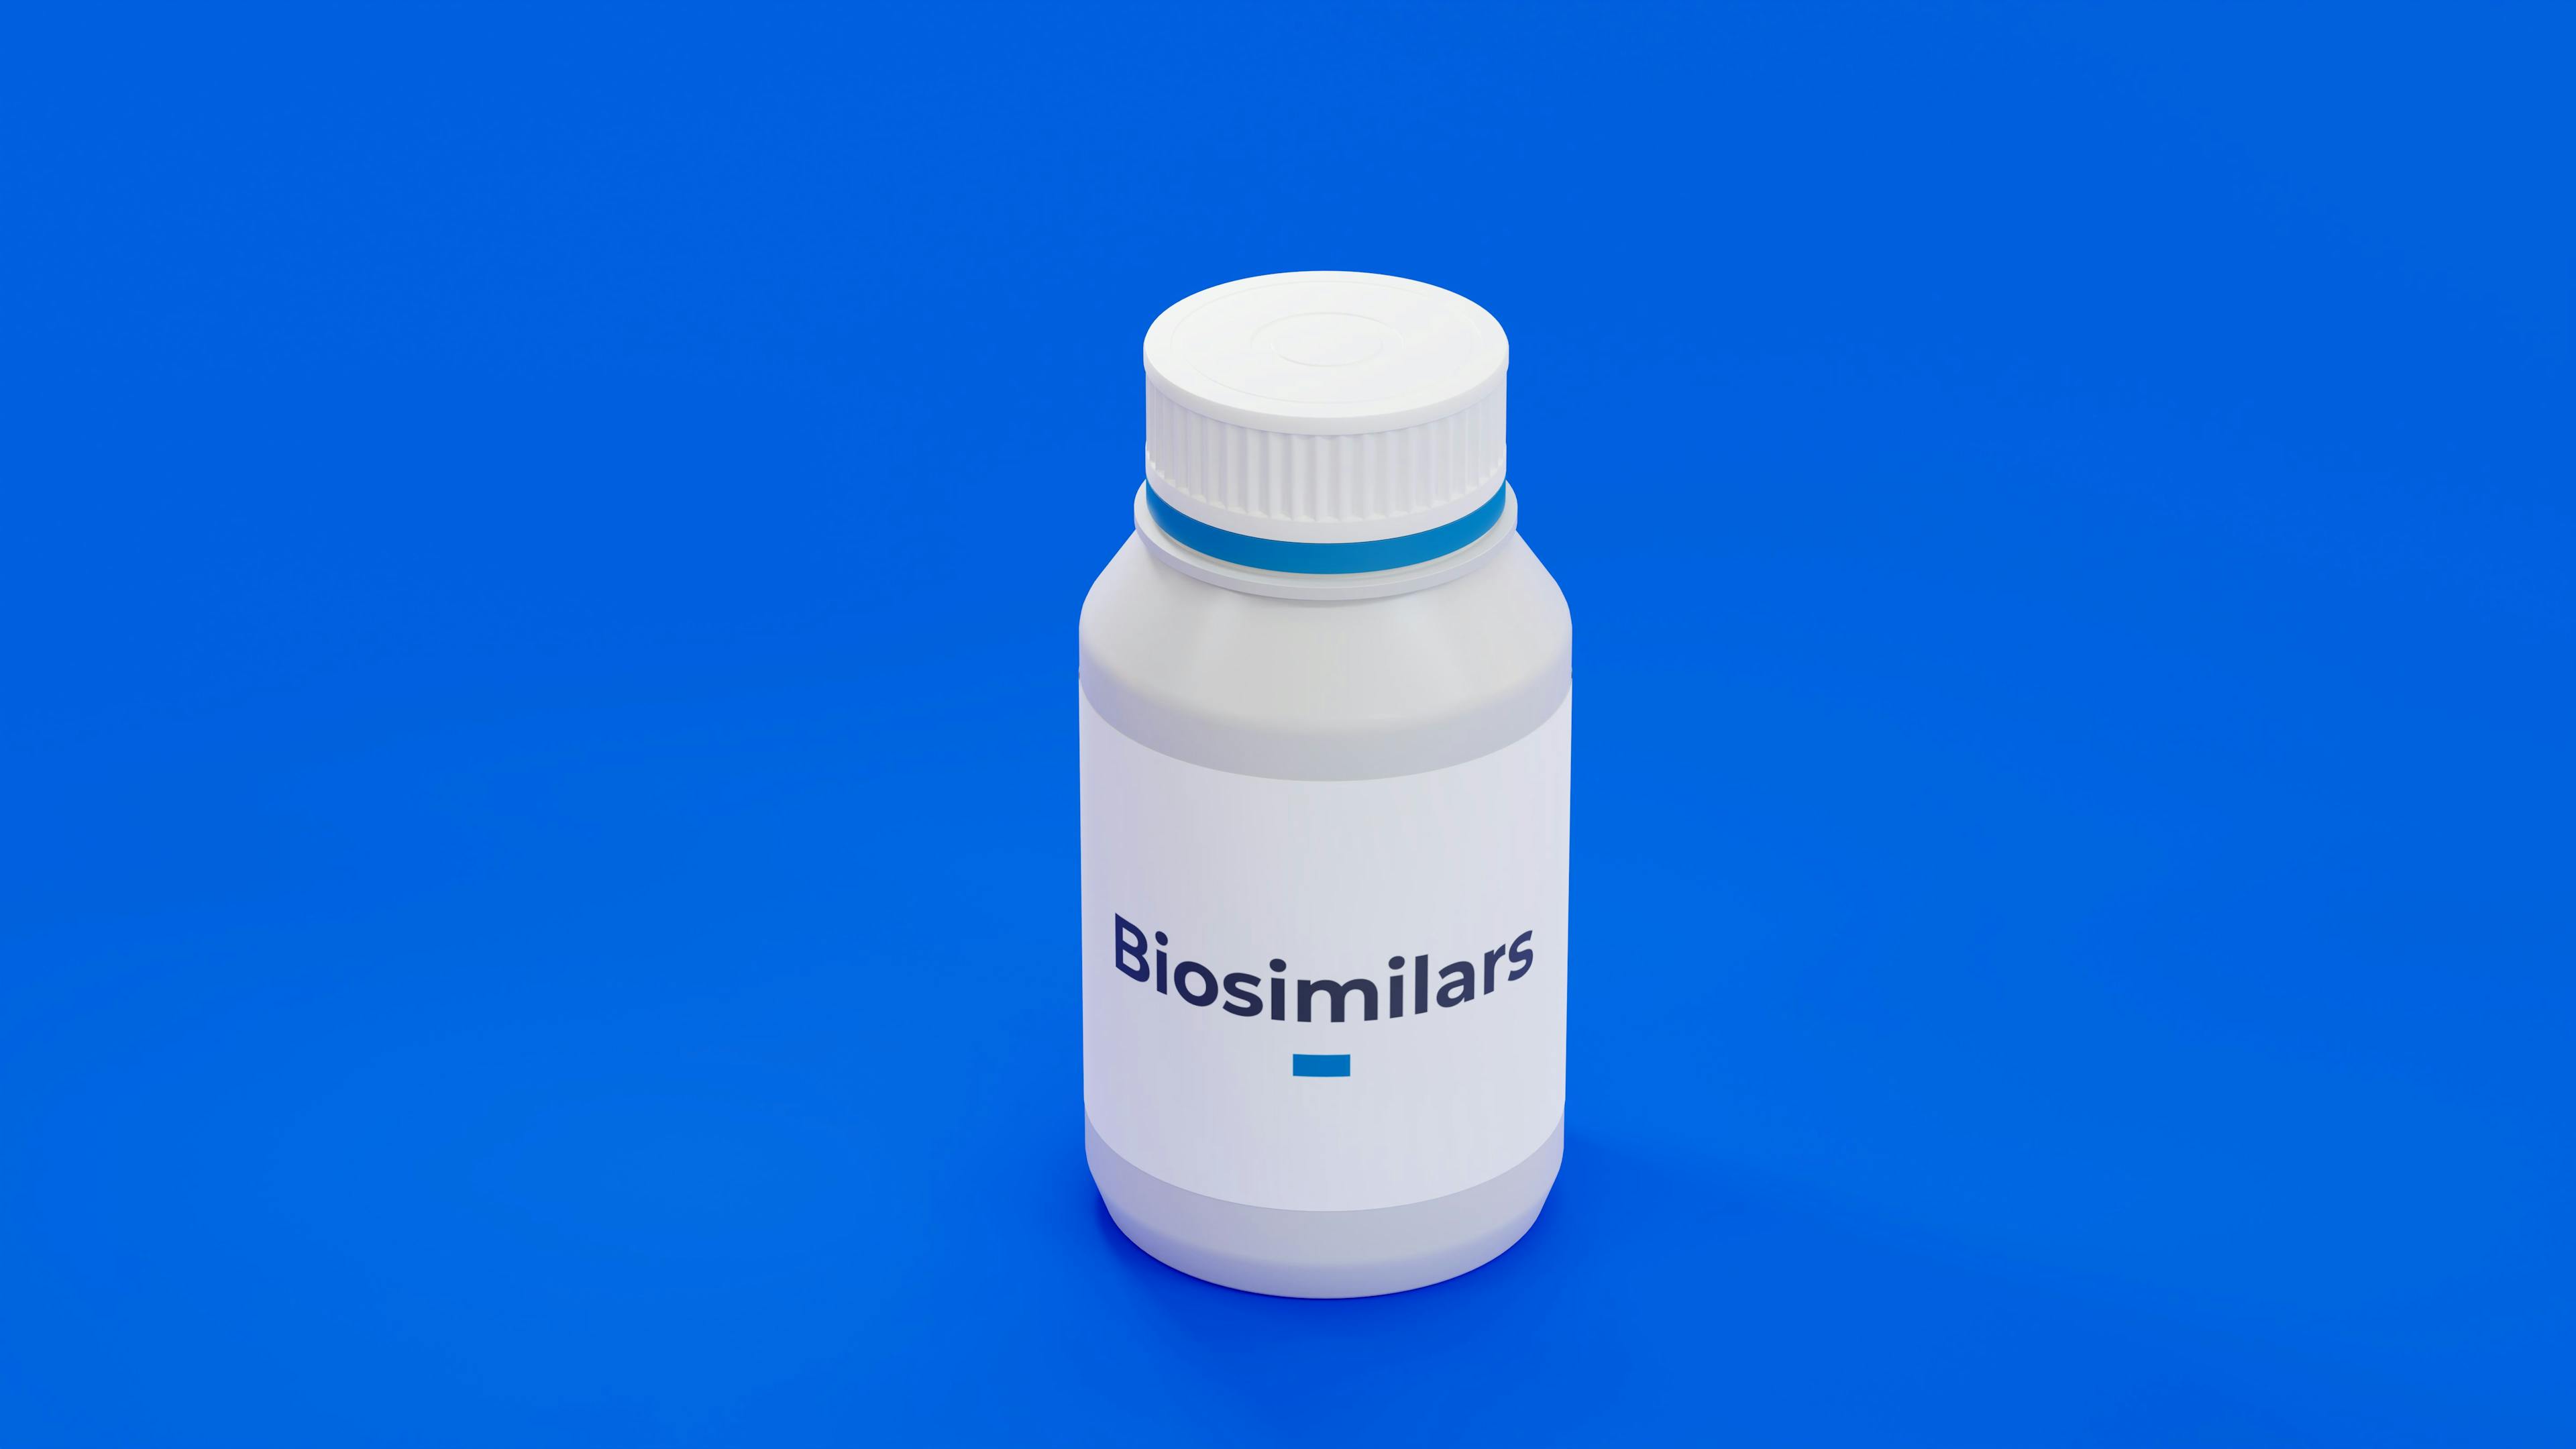 Biosimilar Drug Bottle on Blue Background | image credit: Carl - stock.adobe.com